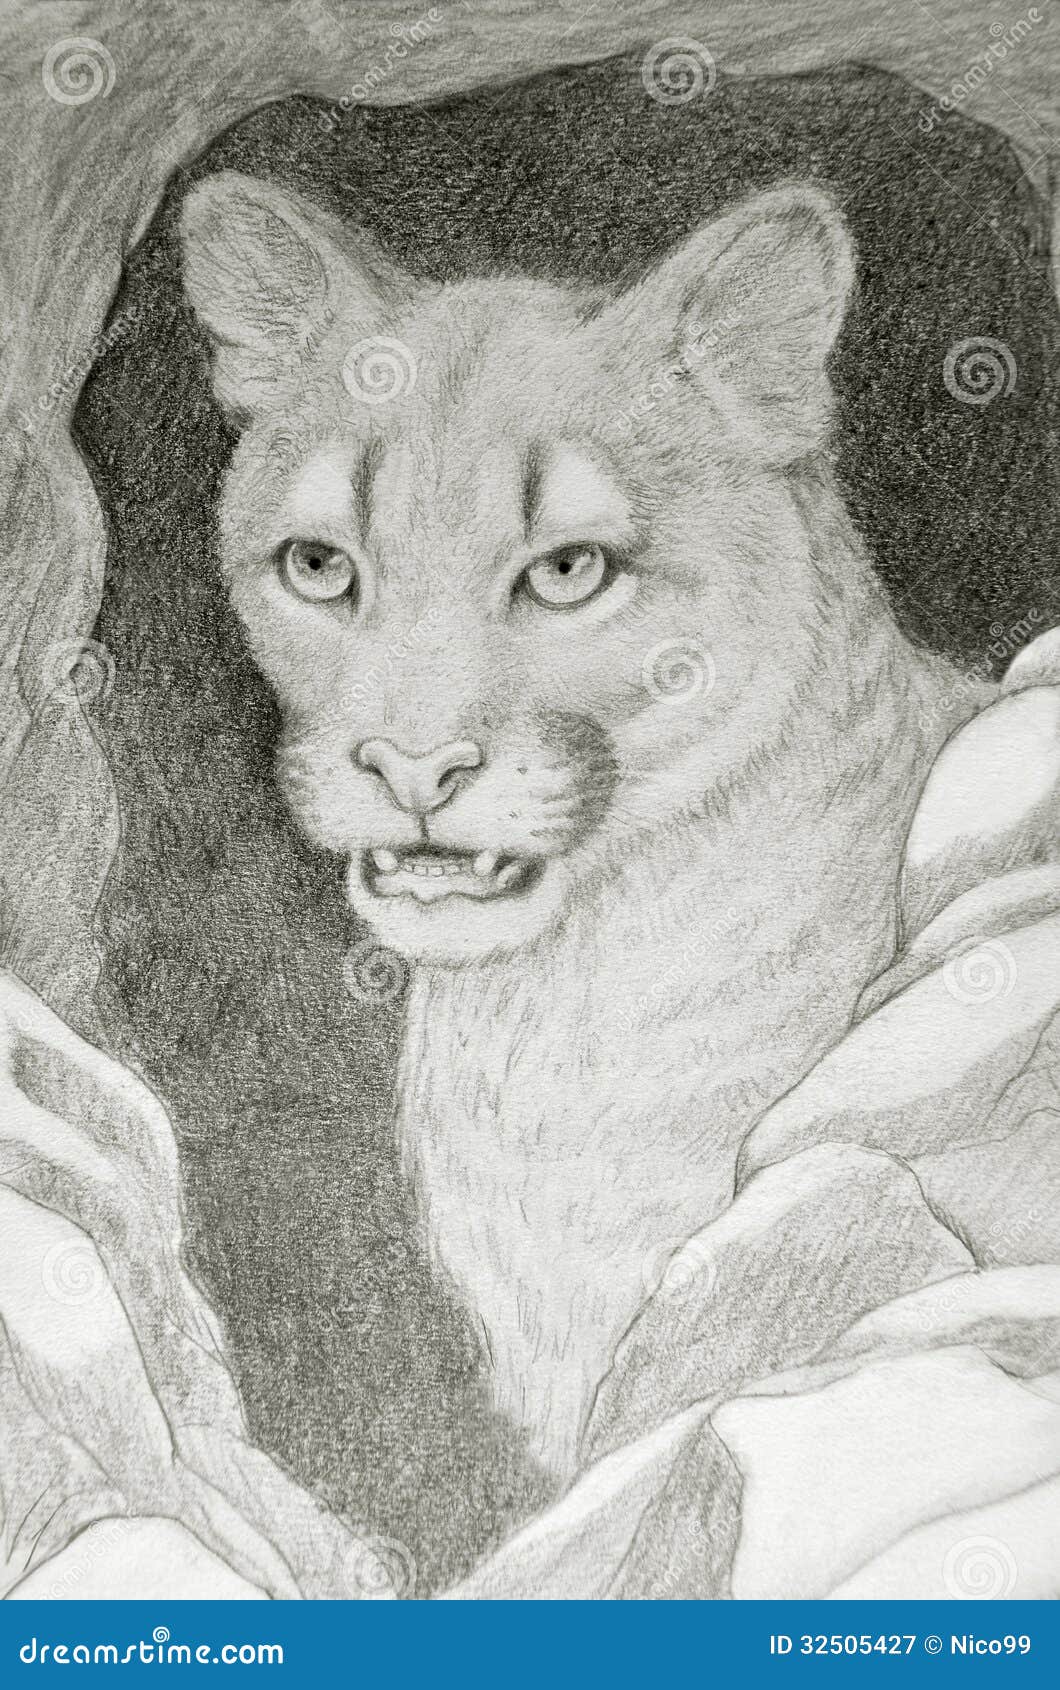 cansada eficiencia ético Retrato De La Cara Del Puma Stock de ilustración - Ilustración de  despredador, cazadores: 32505427